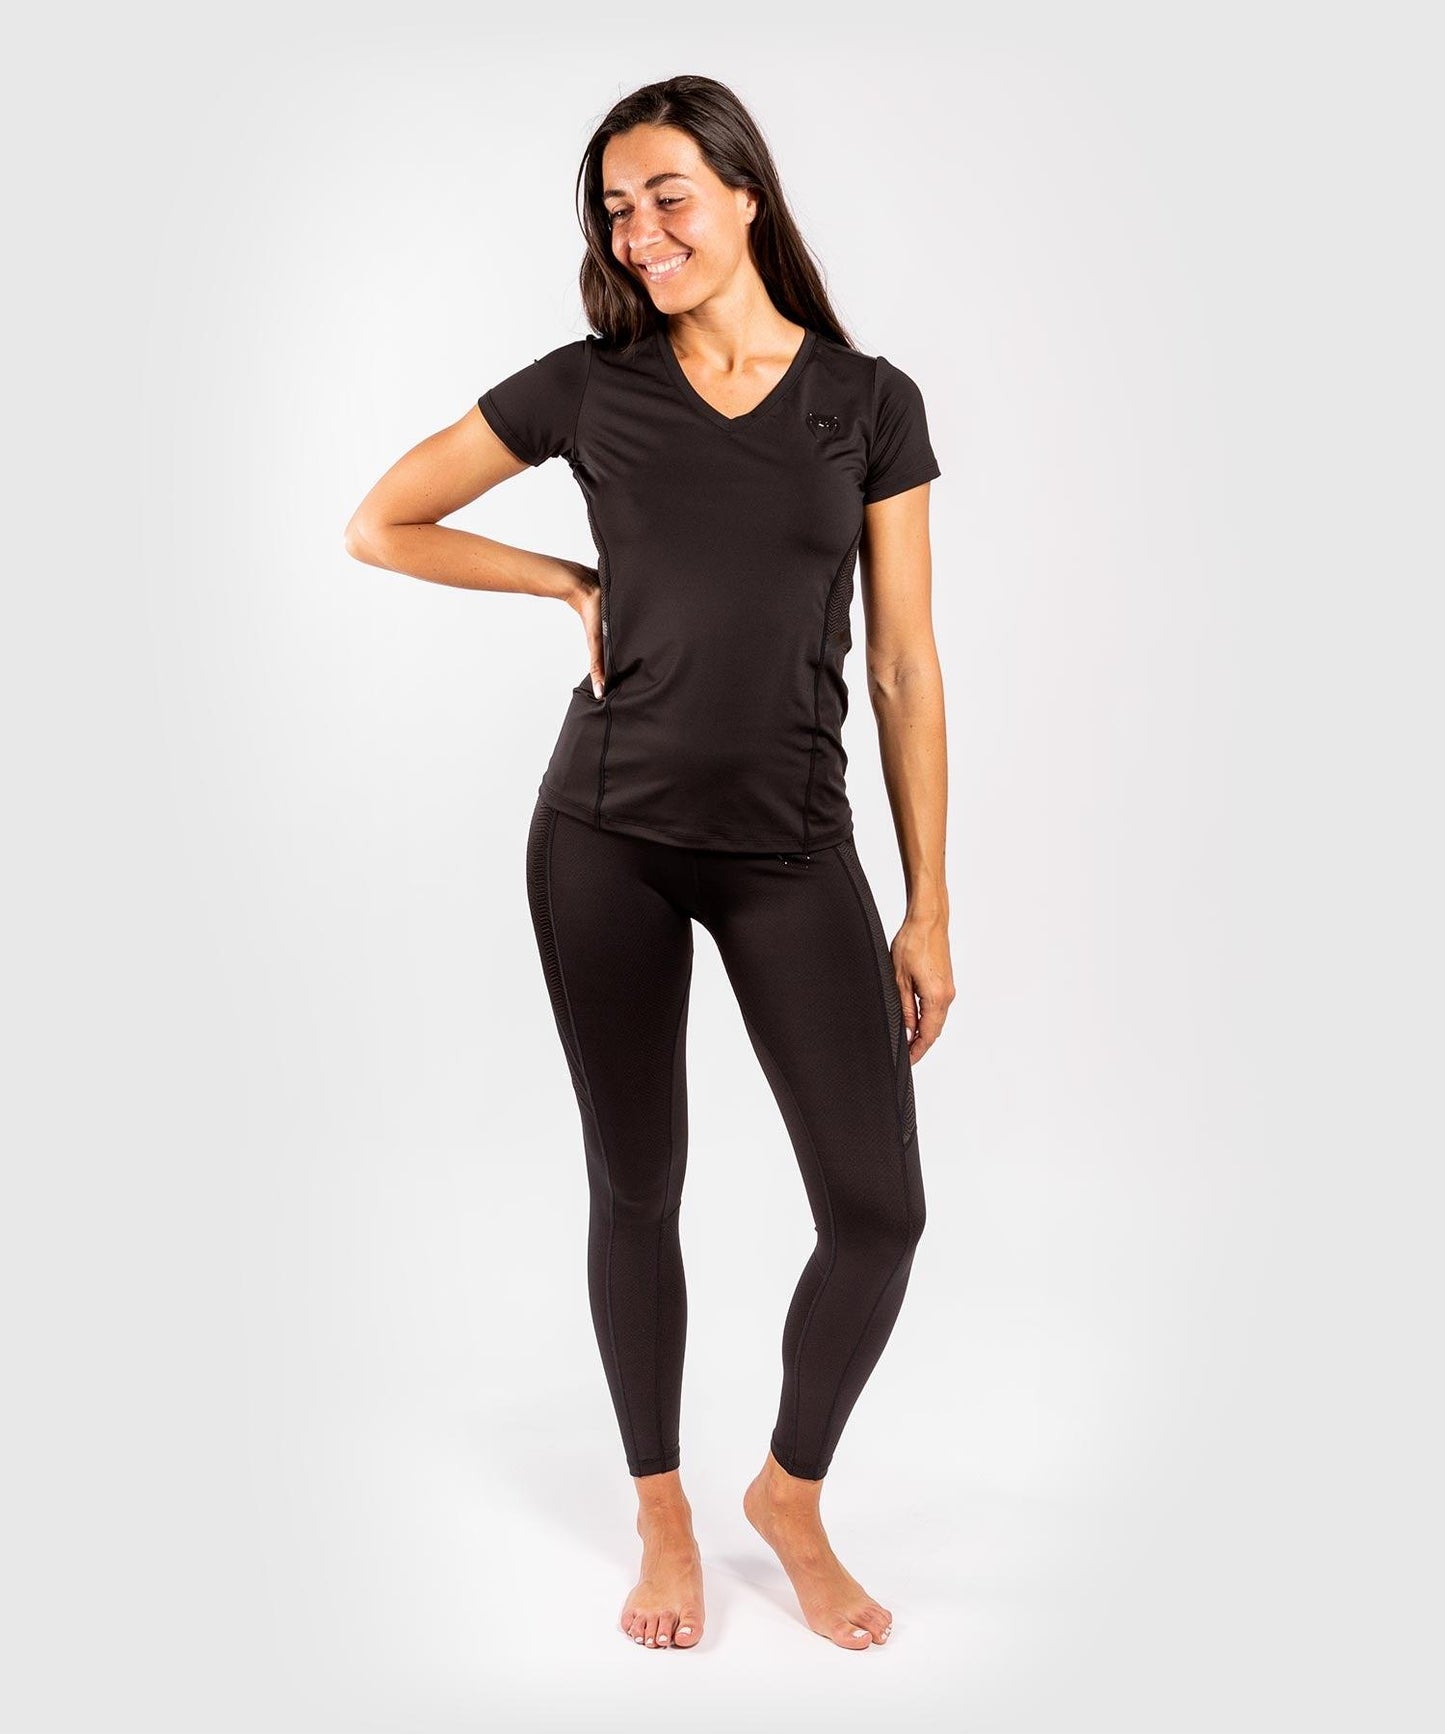 Venum G-Fit Dry-Tech T-shirt - For Women - Black/Black Picture 8